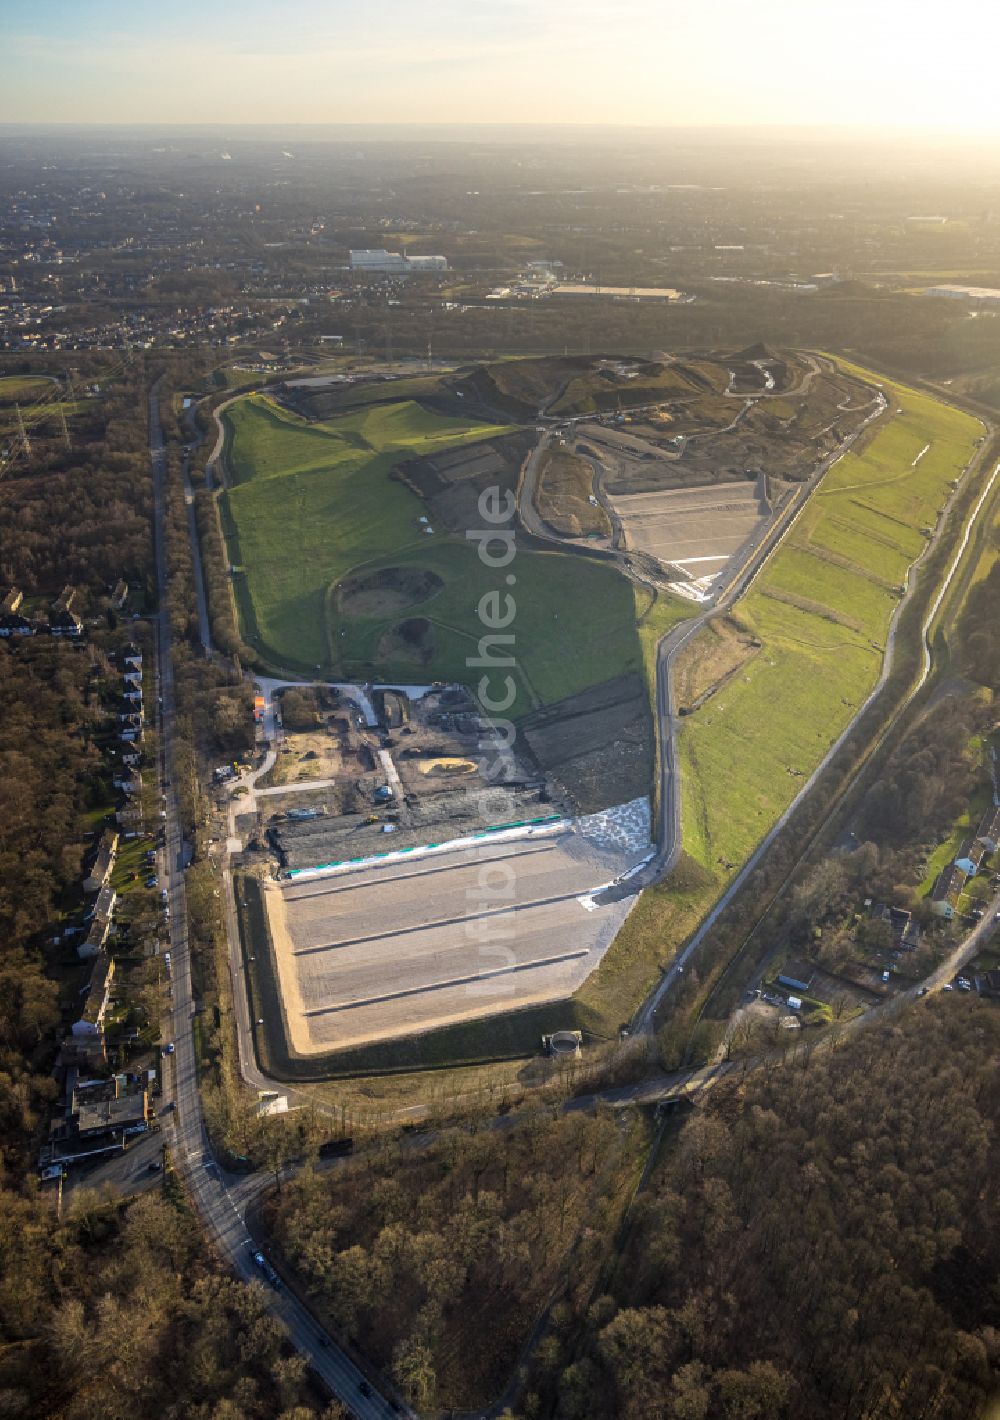 Luftbild Gelsenkirchen - Gelände der aufgeschütteten Mülldeponie Zentraldeponie Emscherbruch (ZDE) in Gelsenkirchen im Bundesland Nordrhein-Westfalen, Deutschland